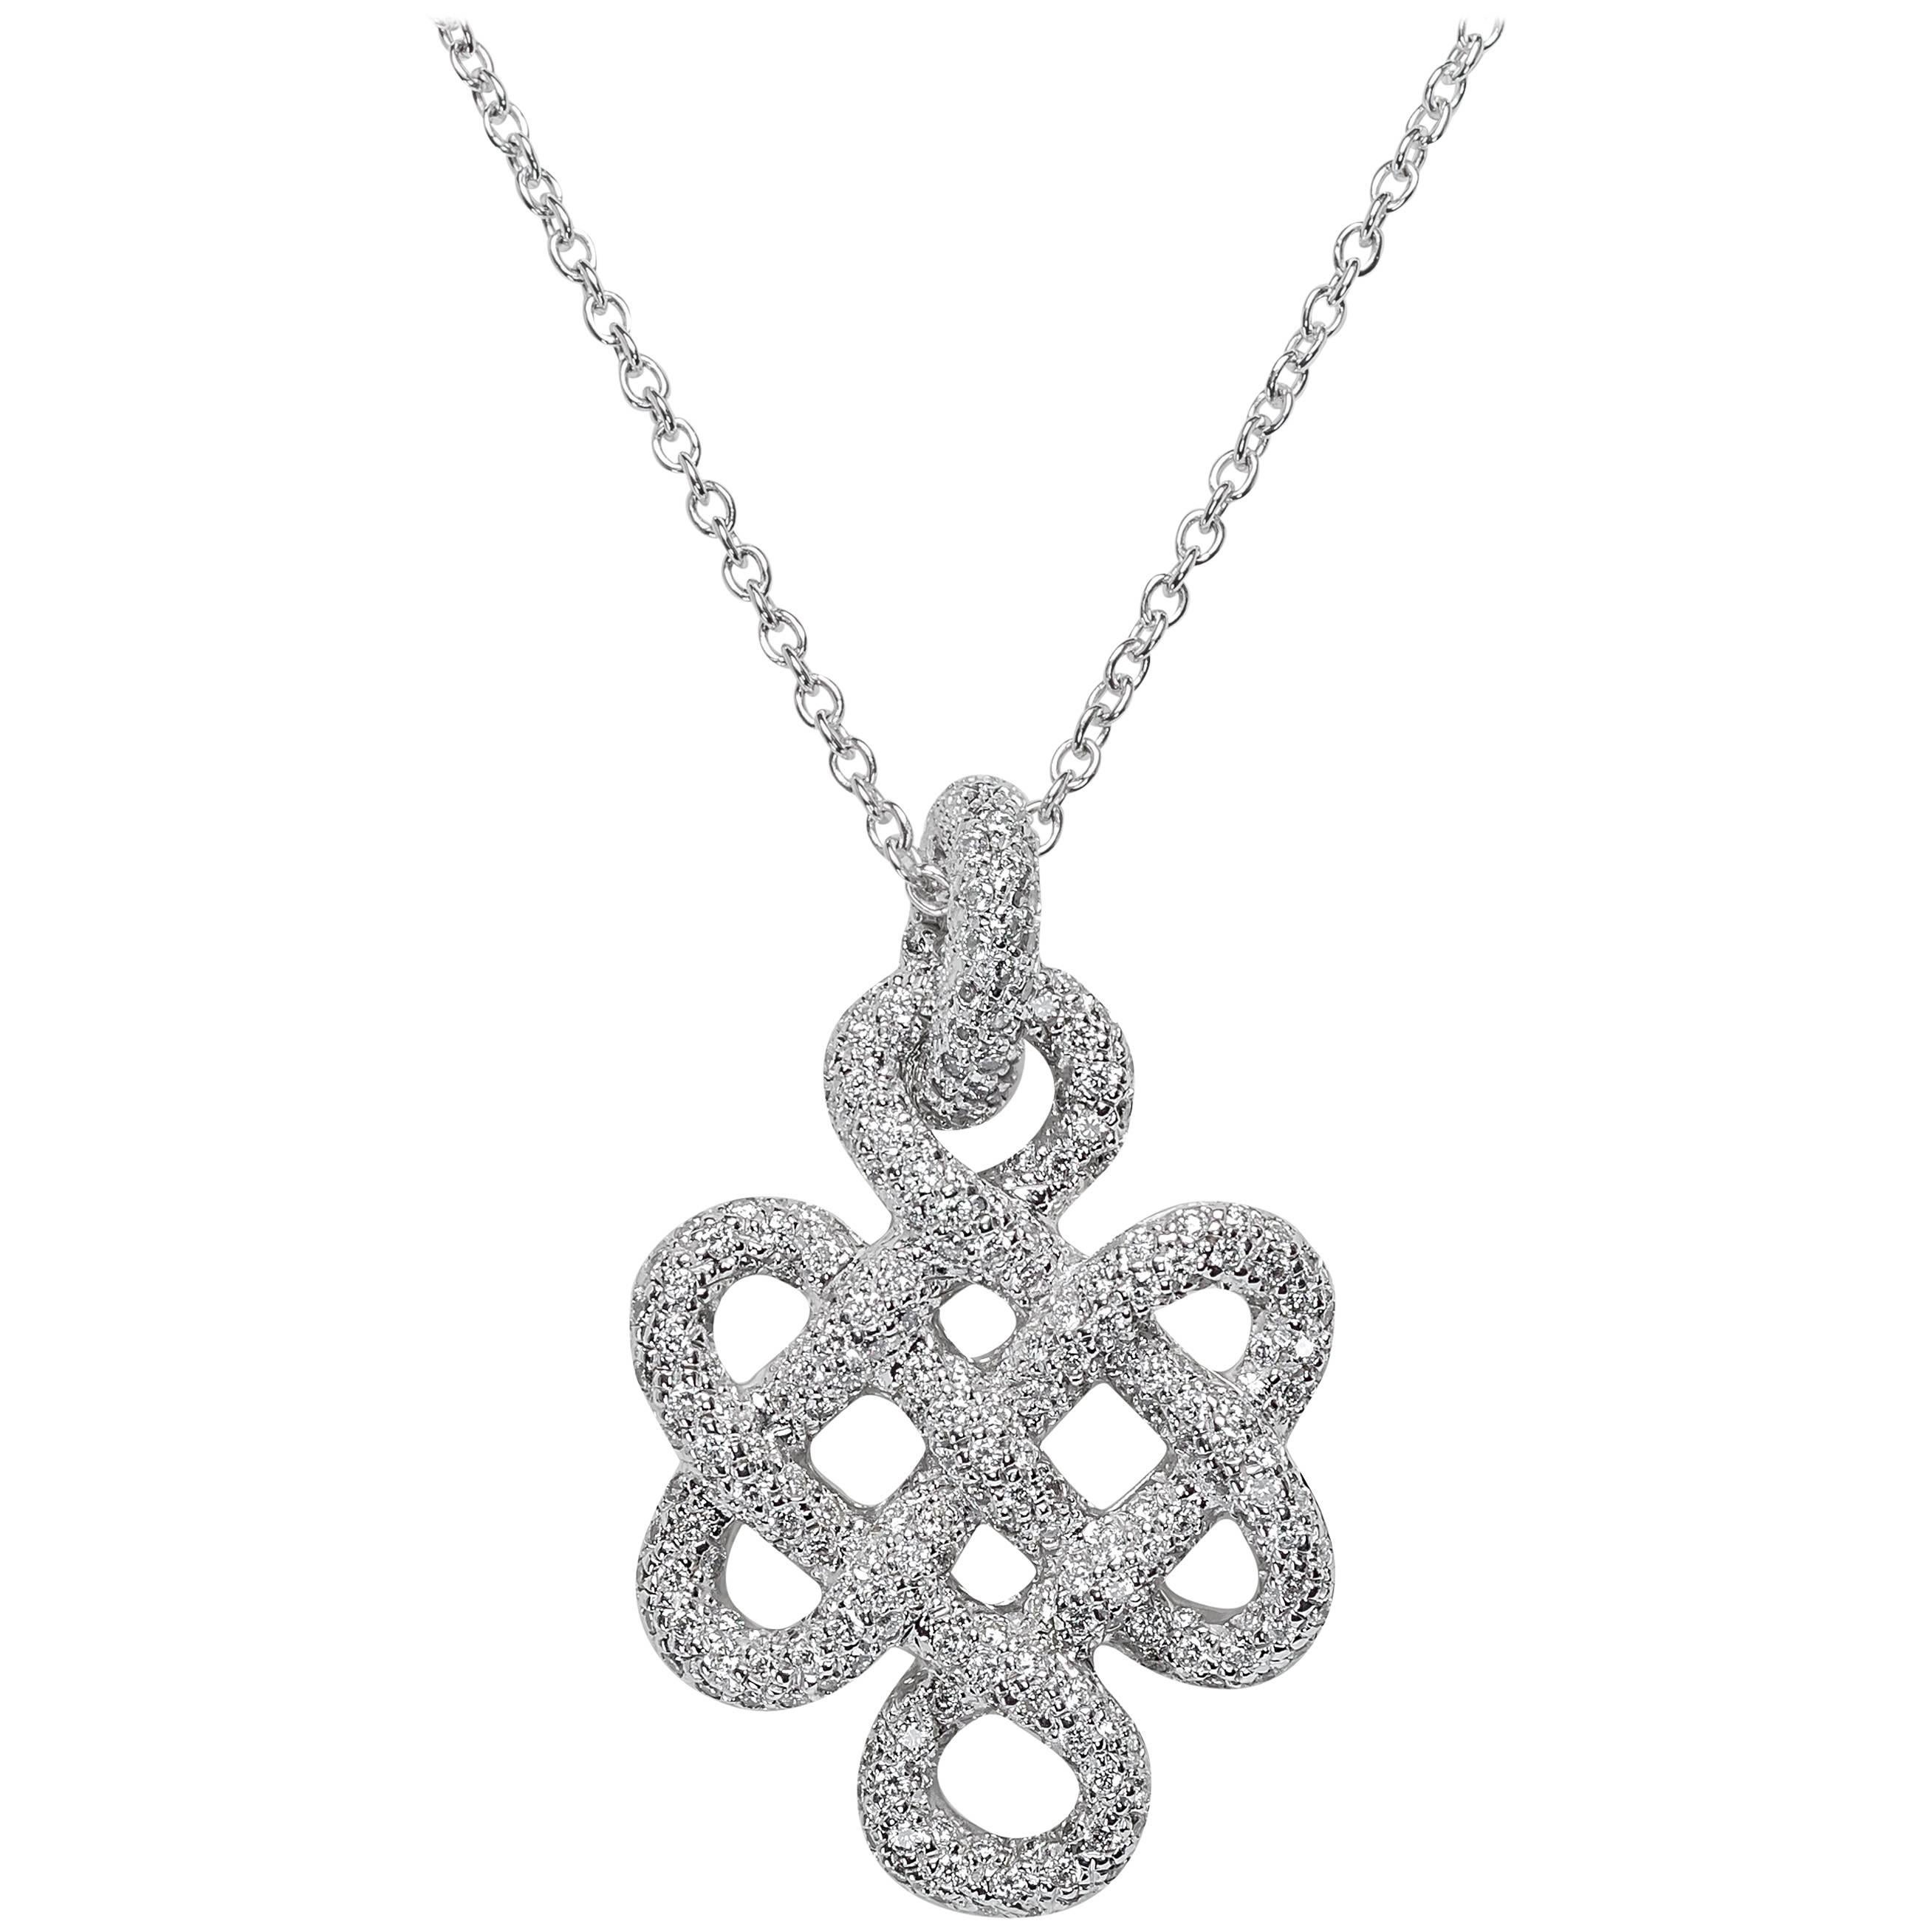 H. Stern Diane von Furstenberg 1.57 Carats Diamonds Gold Necklace